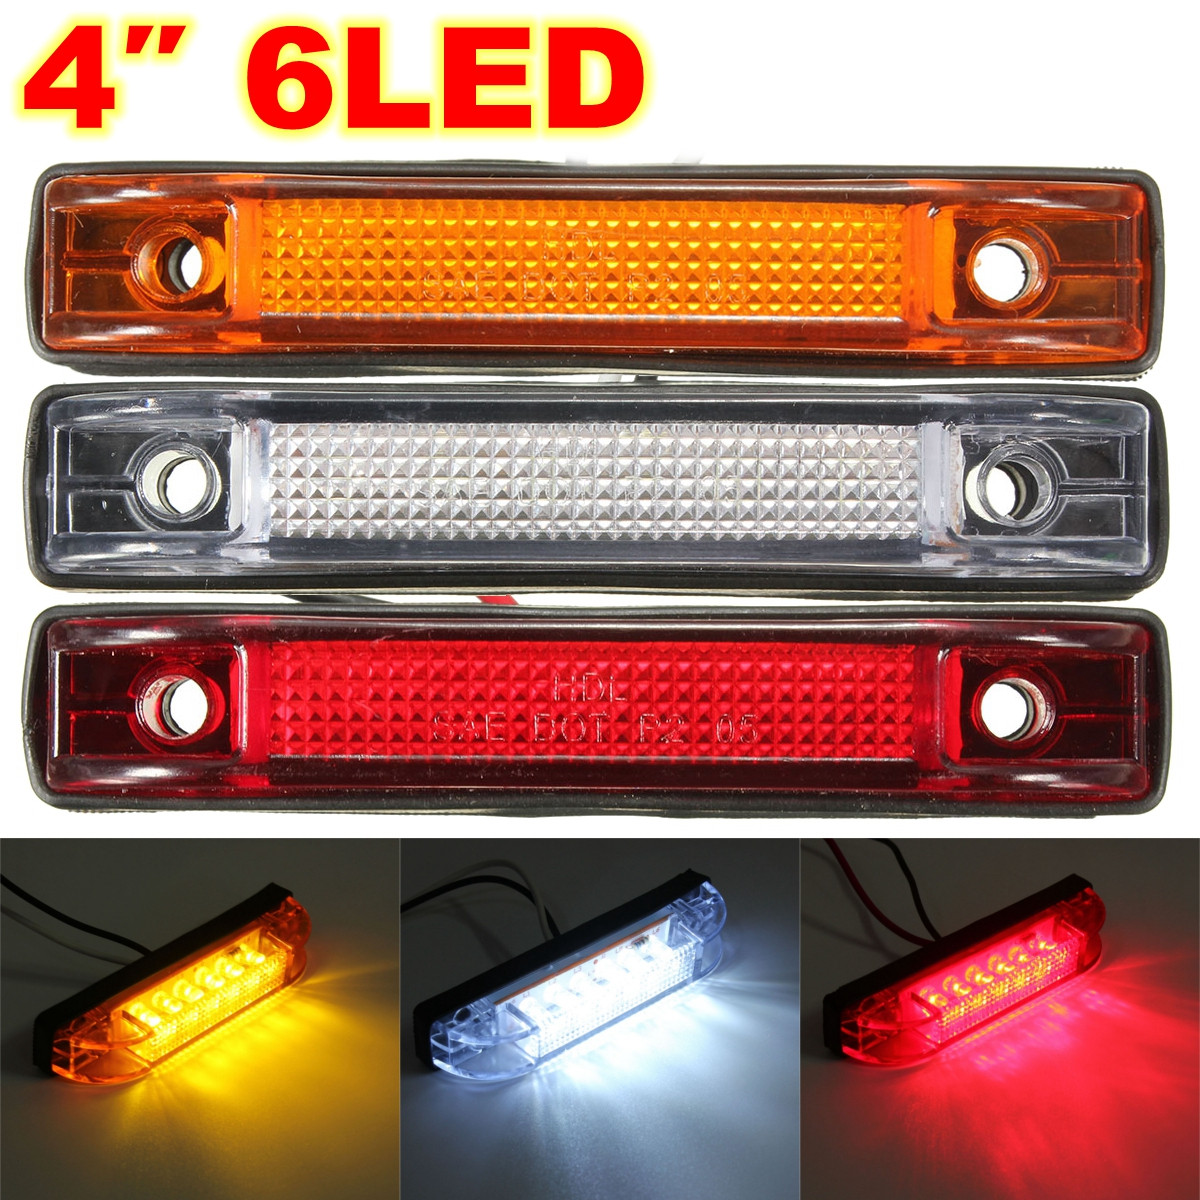 12V-24V 2 LED Red//Amber Side Marker Lights Lamp Trailer Truck Lorry Caravan Van